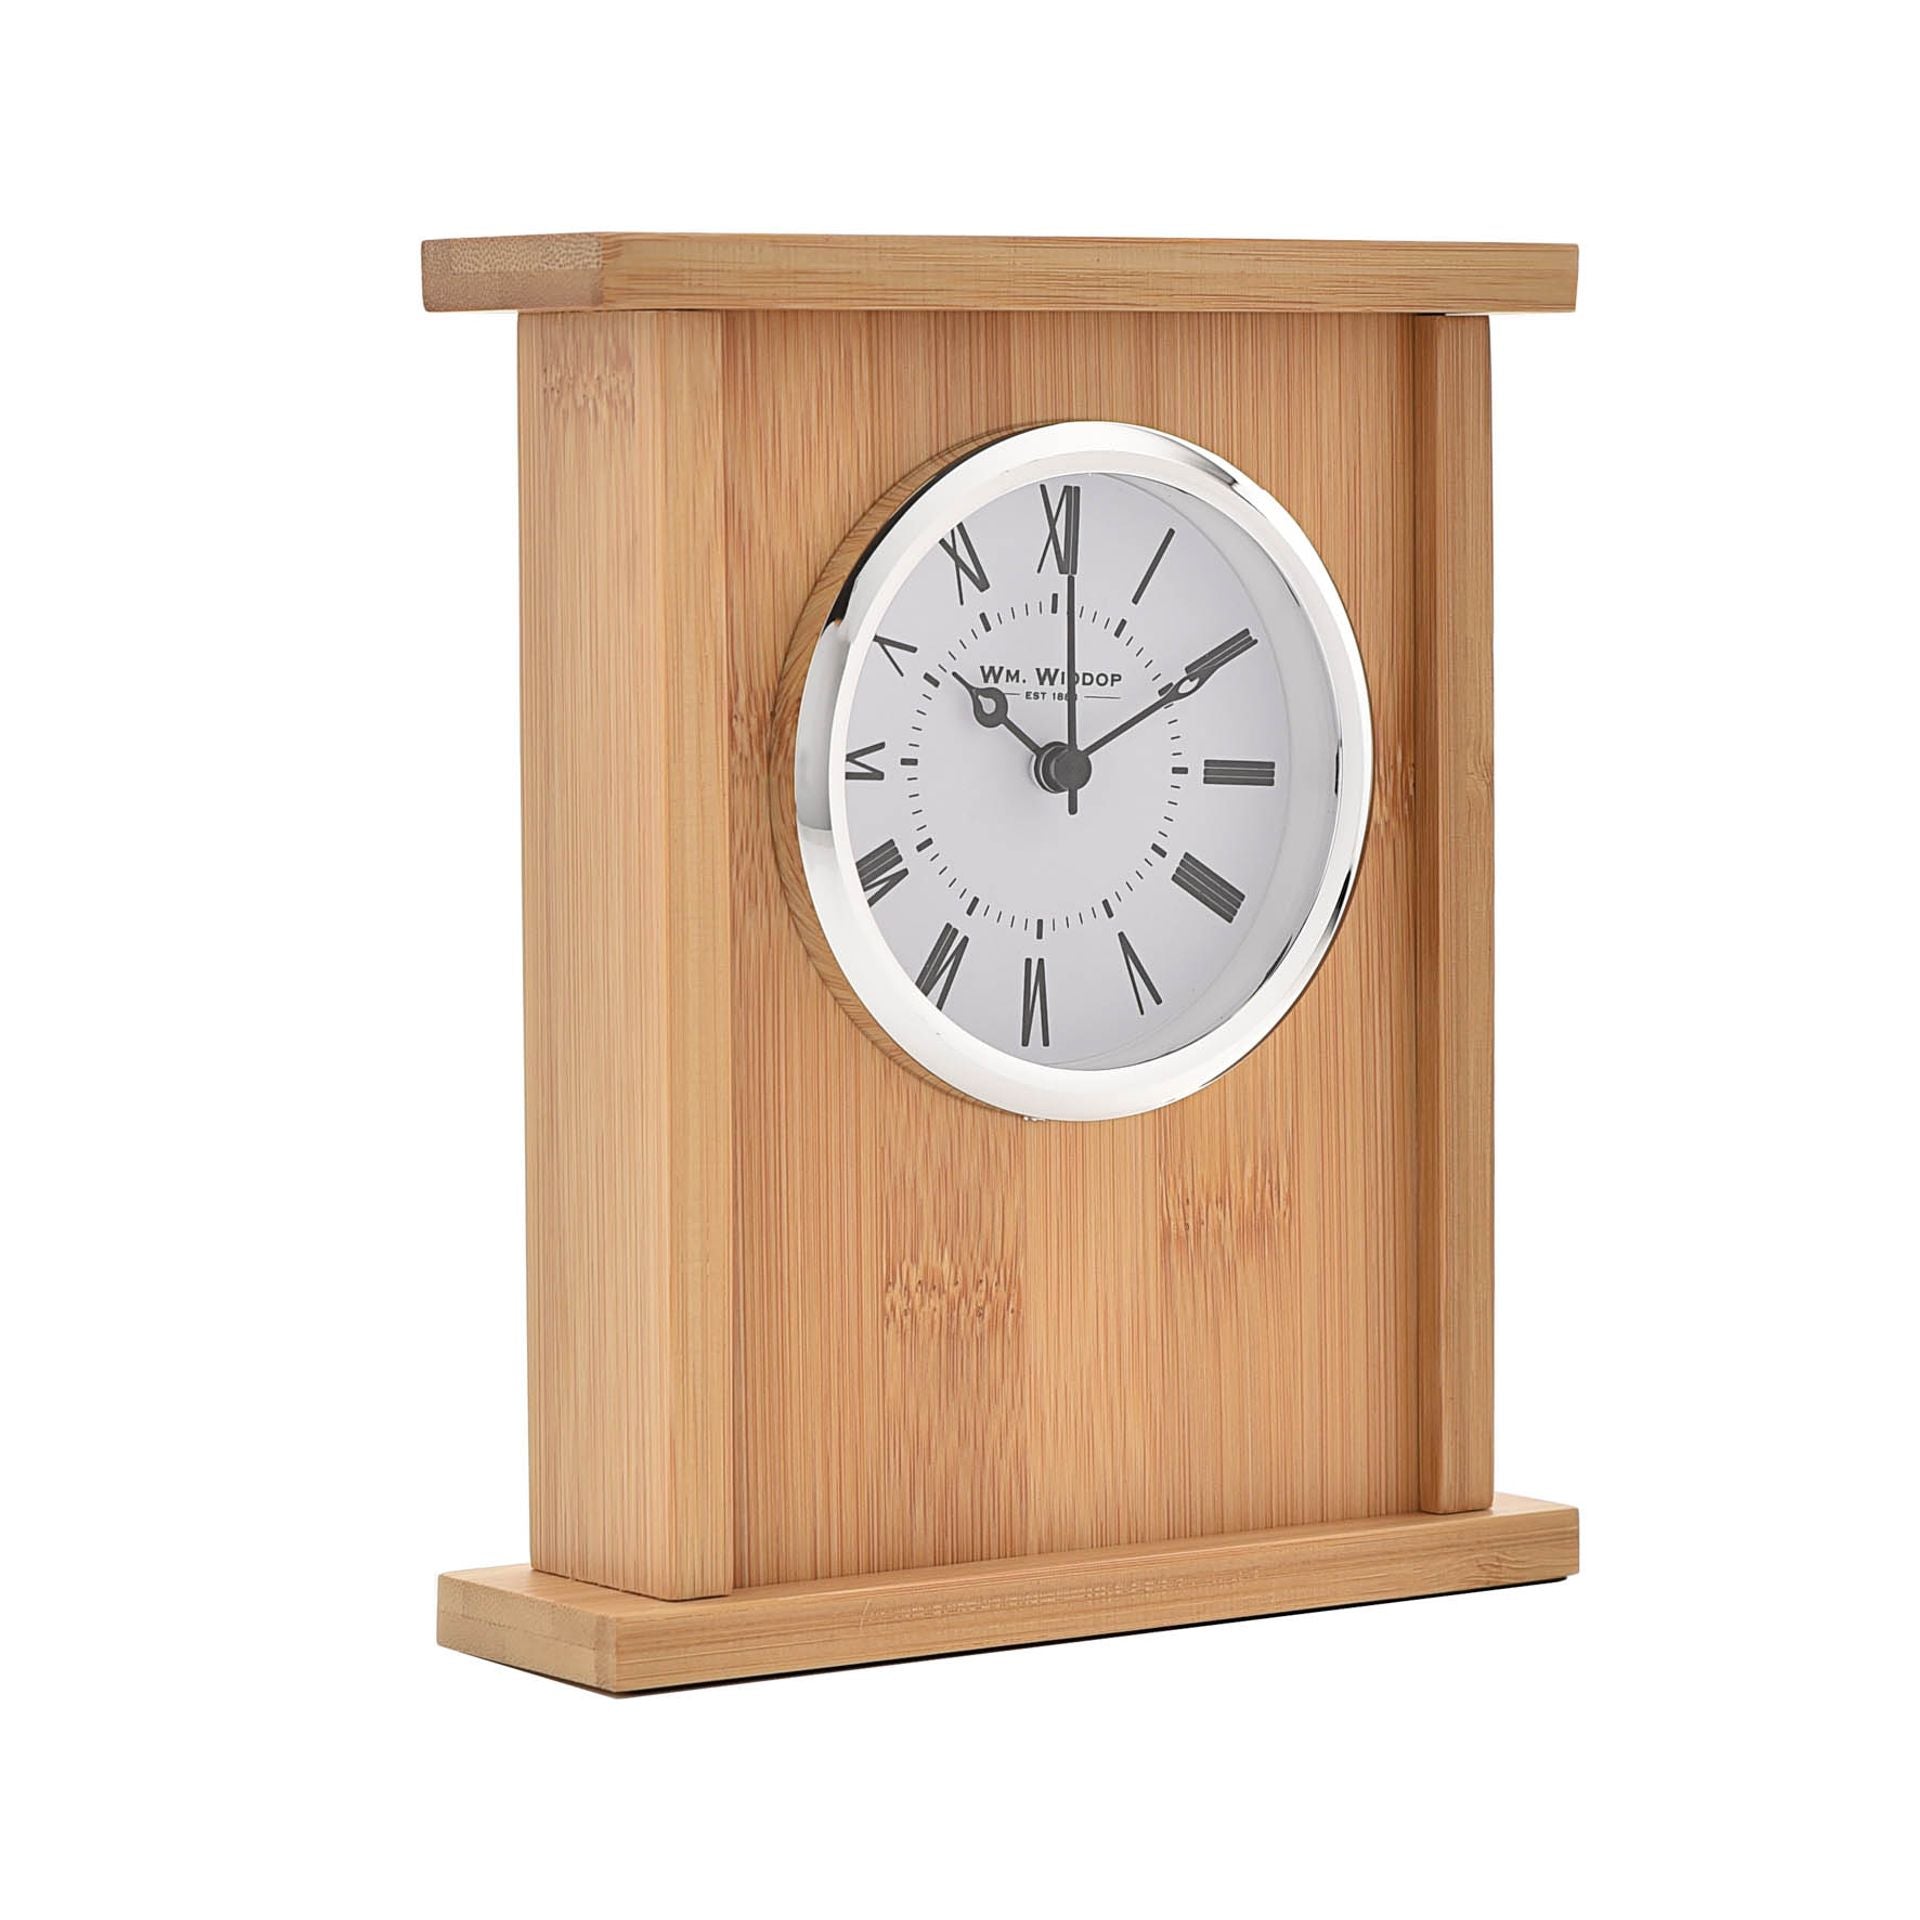 WM. Widdop Wooden Rectangular Mantel Clock